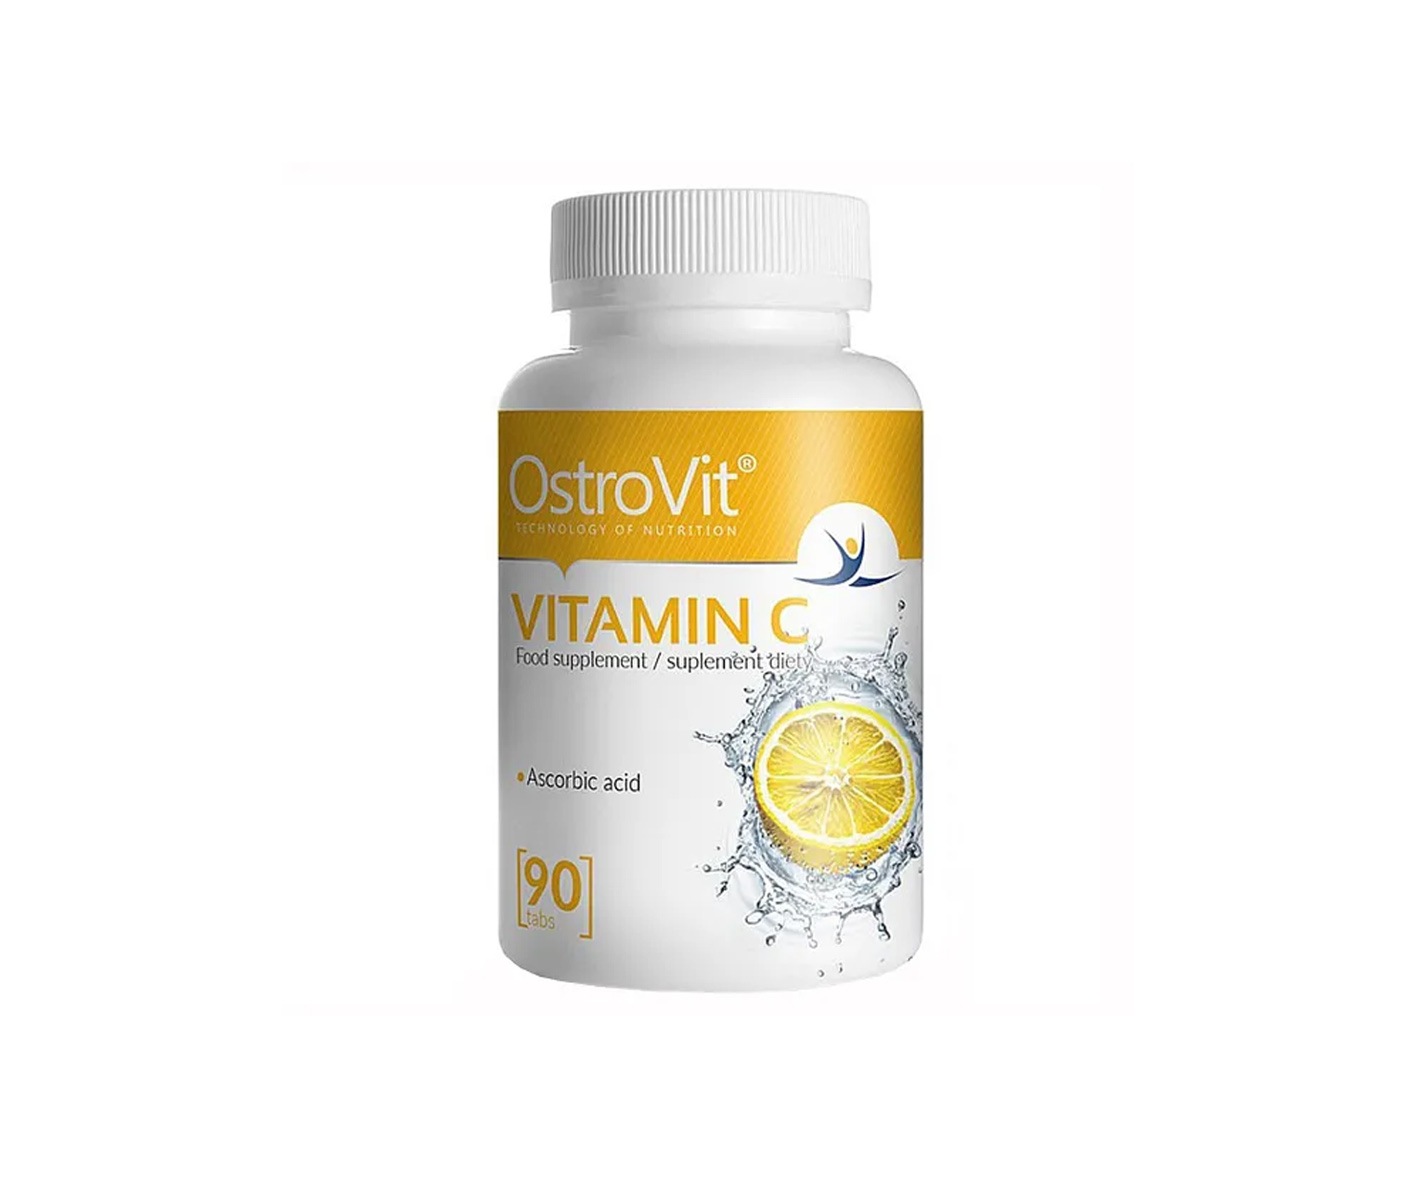 OstroVit, Vitamin C, Tabletten für die Immunität